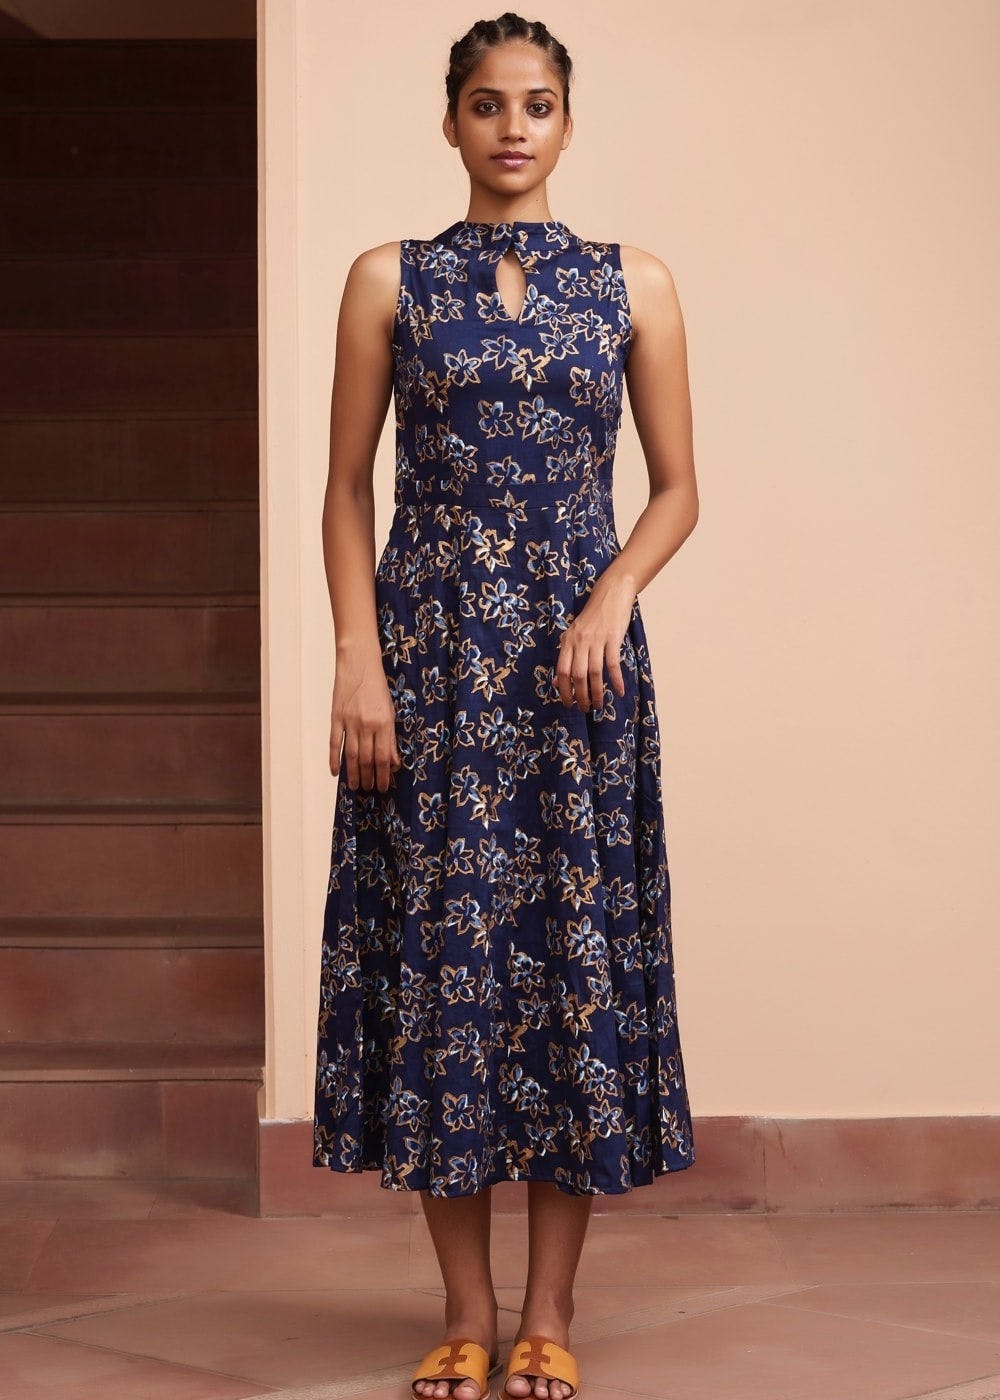 Get Keyhole Neck Floral Flared Dress at ₹ 3400 | LBB Shop